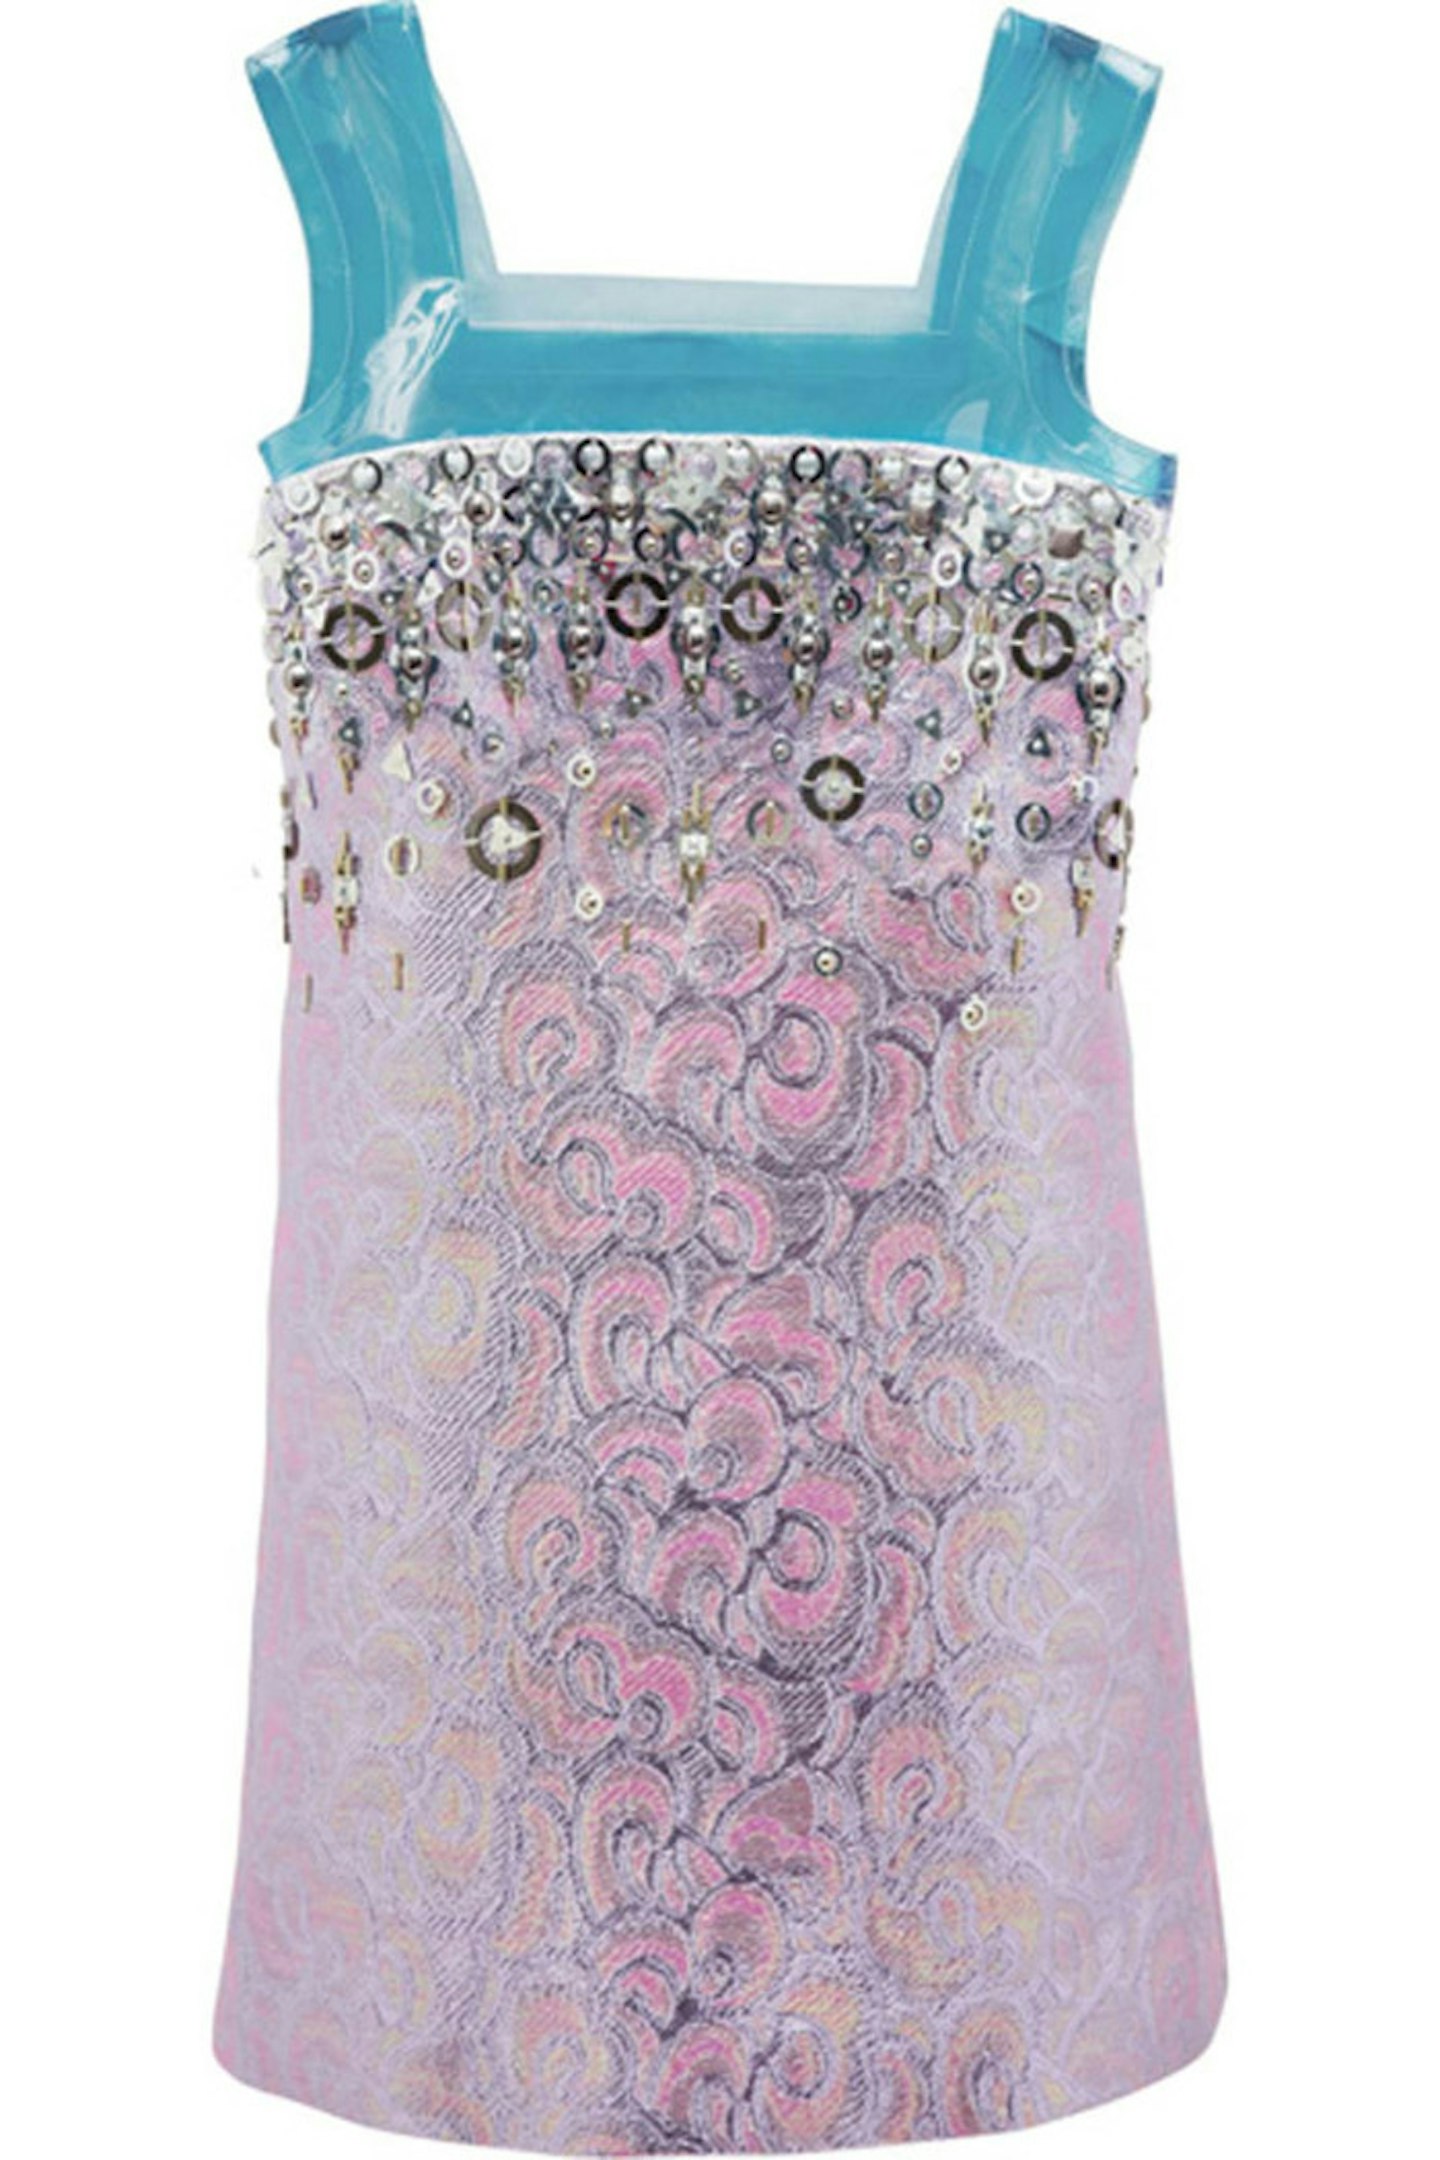 8. Embelished Jaquard Mini Dress, £3215, Miu Miu at Net-A-Porter